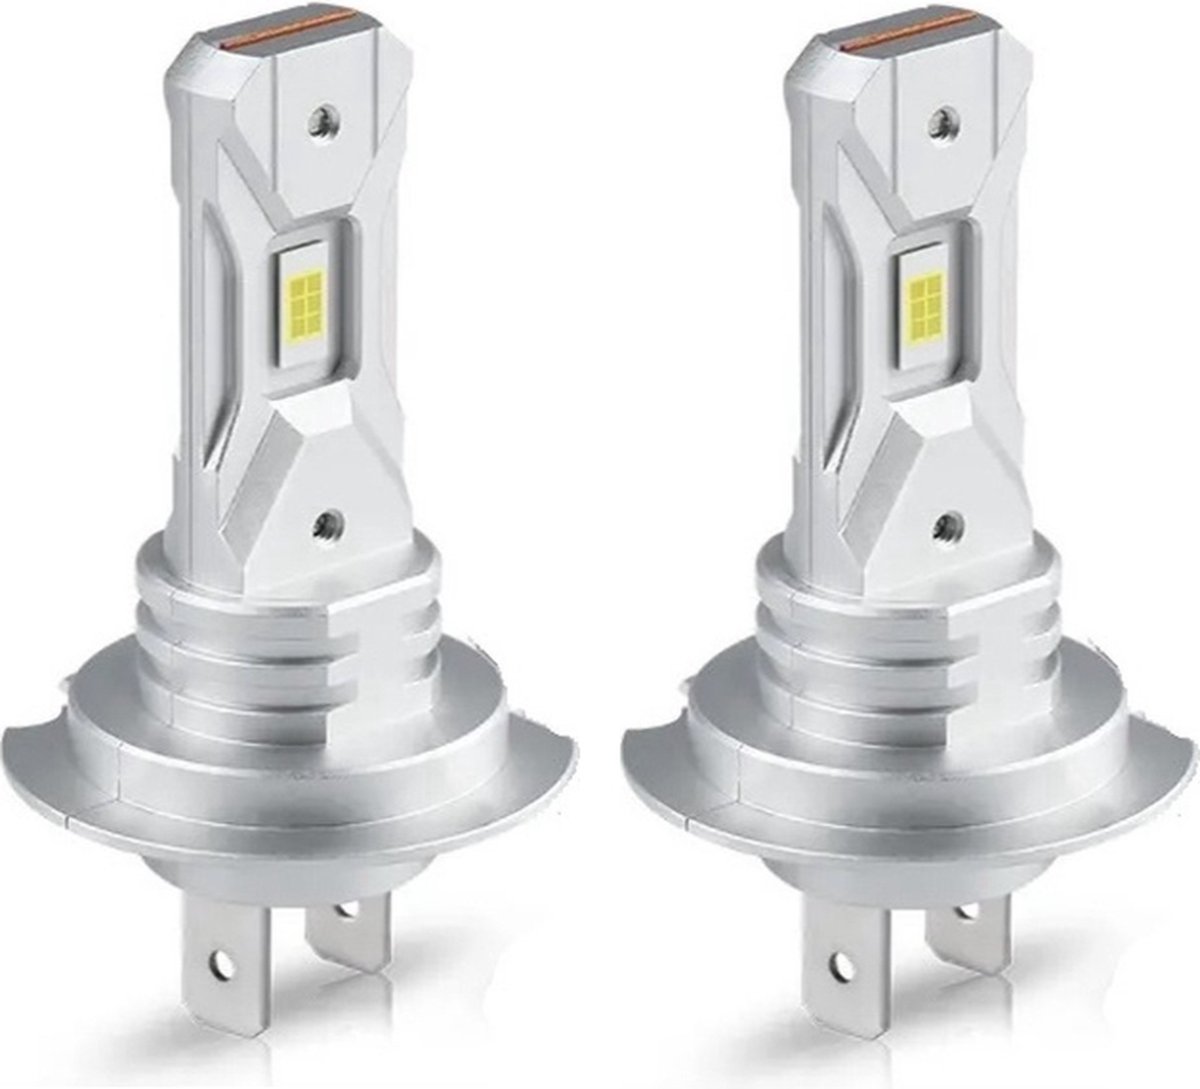 TLVX H7 Perfect fit LED lampen 6000k Helder Wit licht (2 stuks) - Hoge lichtopbrengst – CANBUS - 55 Watt vervanger - Auto - Scooter - Motor - Dimlicht - Grootlicht - Koplampen - Autolamp - Autolampen 12V – set 2 stuks